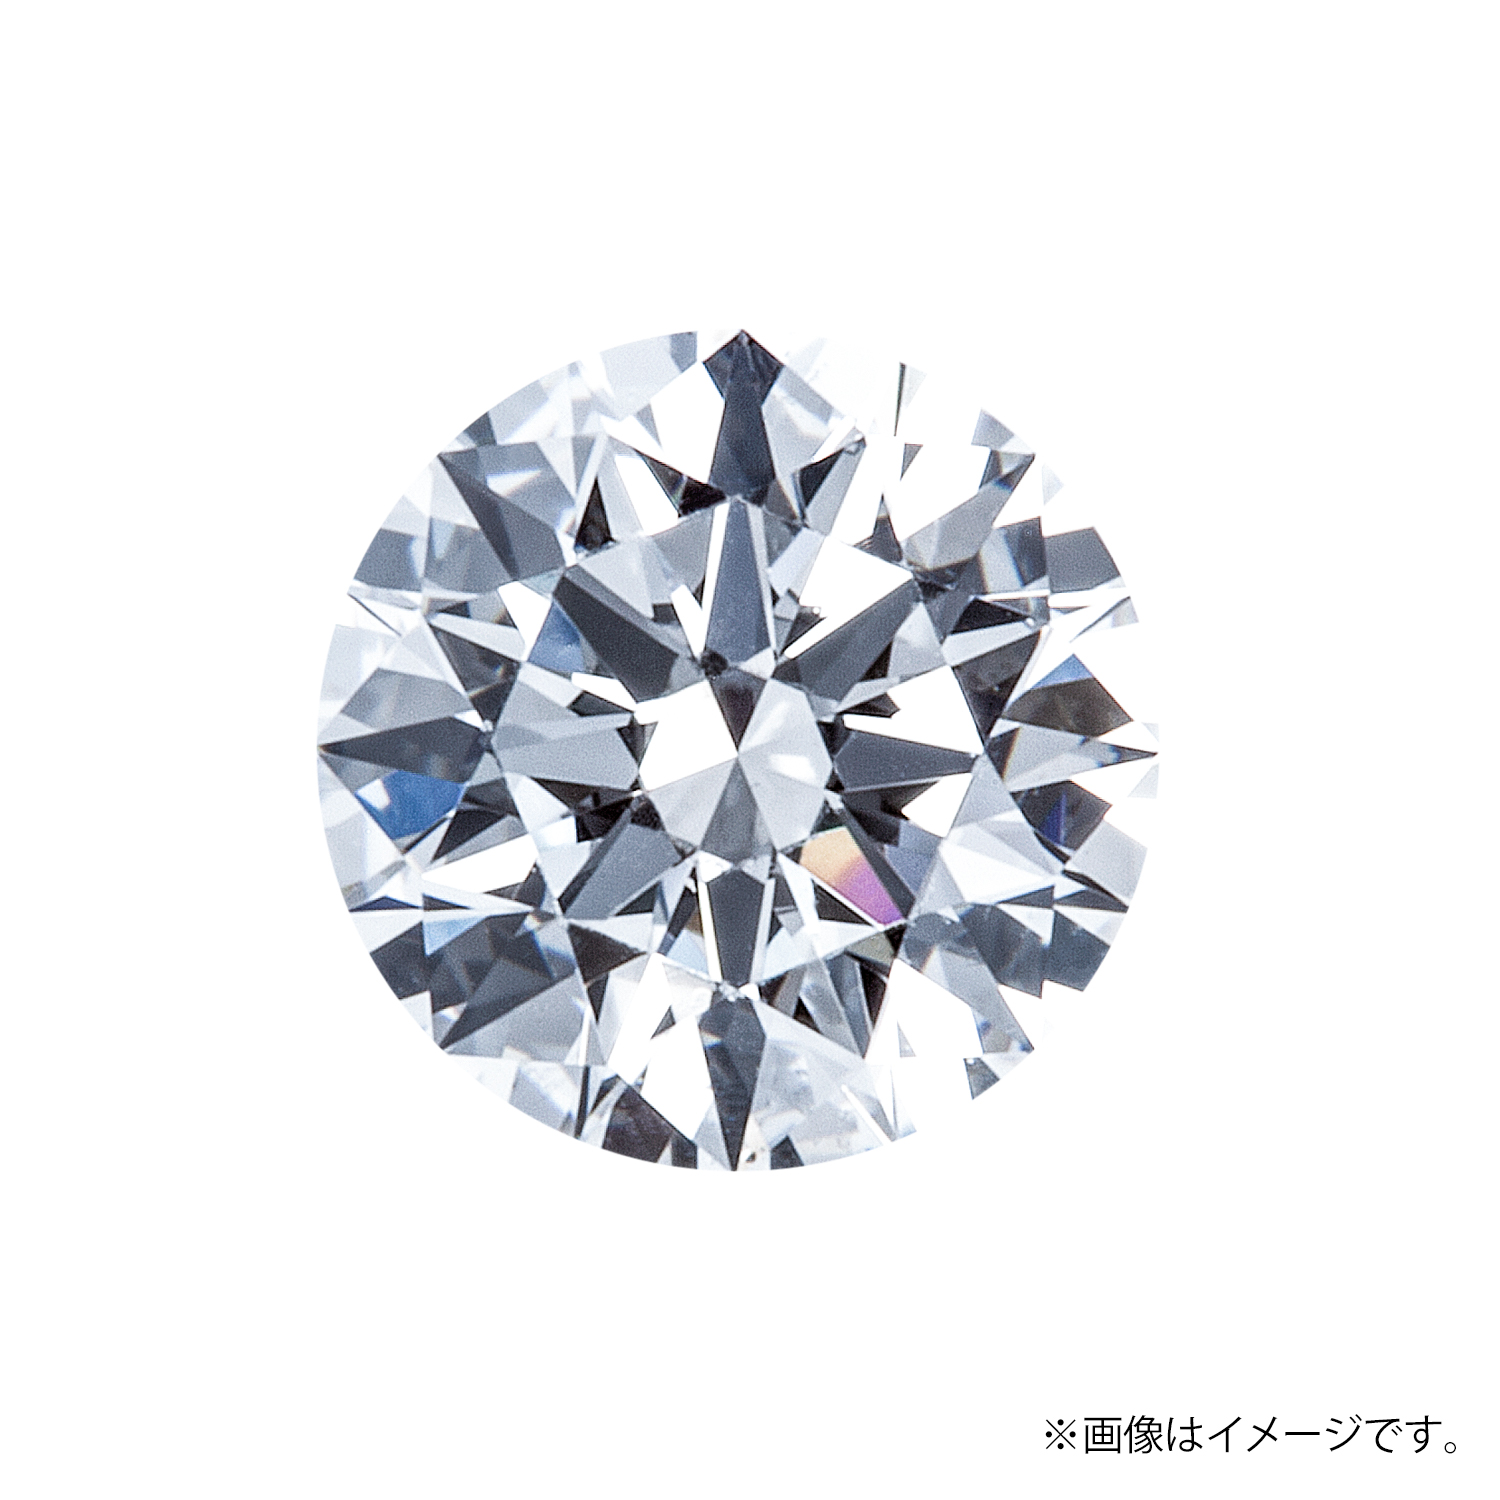 0.183ct Round ダイヤモンド / Ⅾ / VS1 / EX